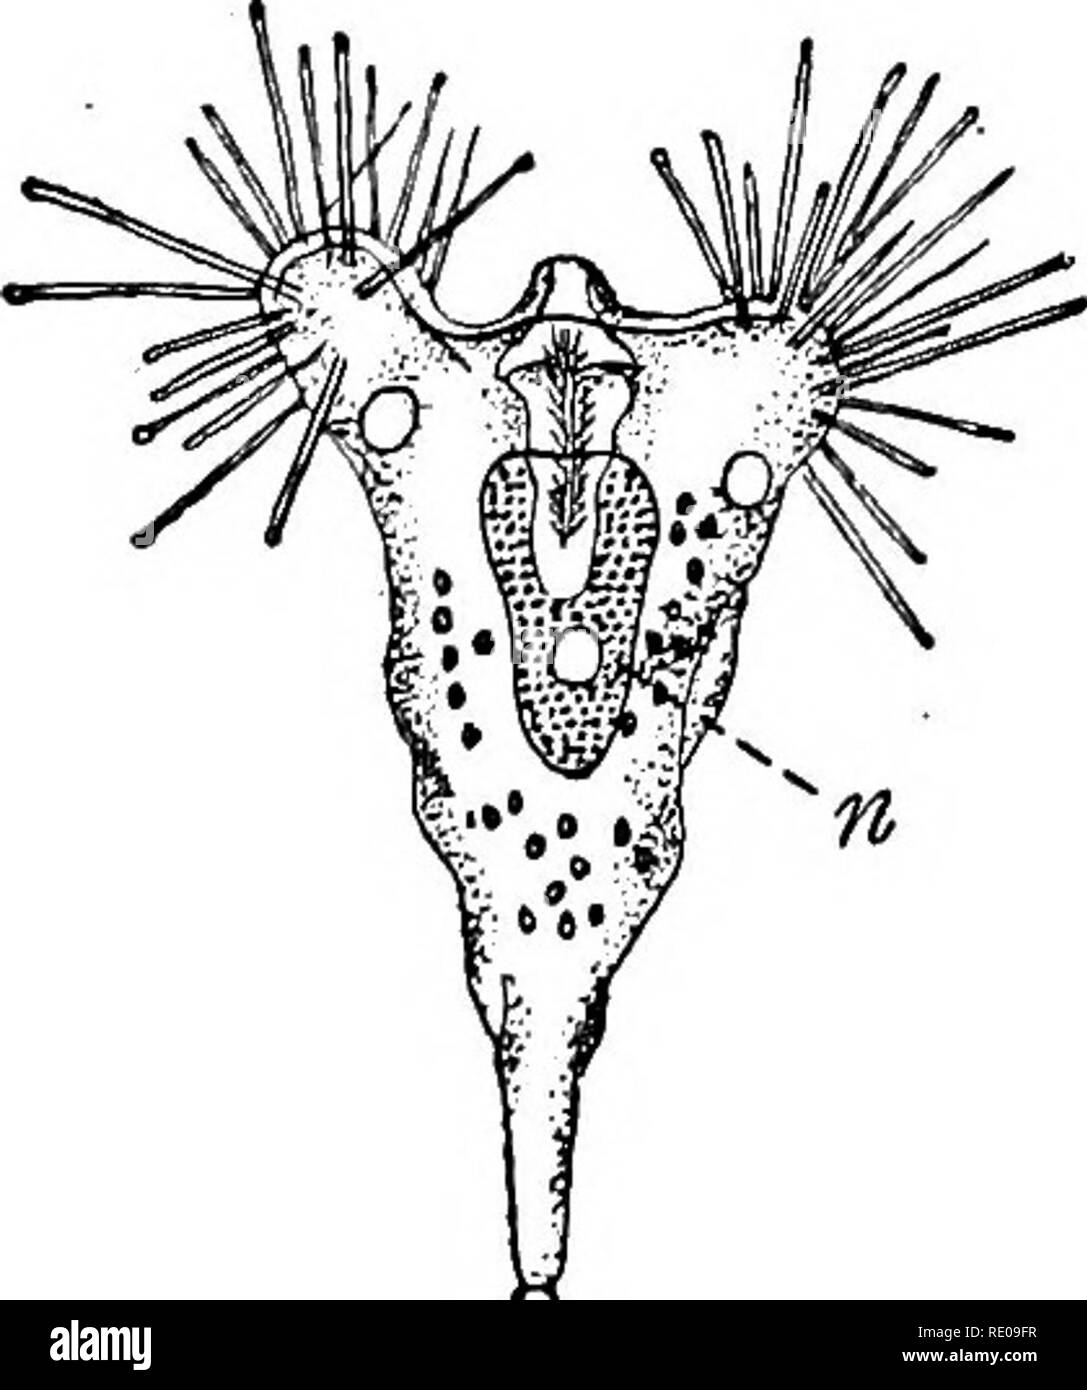 . Die protozoen. Protozoen. -0. Abb. I. - Arten von Protozoen. ^4. Amcsba Proteus, einen rhizopod. Ich?. Peranema trichophorum, ein Nicken. [BUTSCHLI.] C Stylonychia mytilus, ein Ciliate. [BUTSCHLI.]/S. Pyxinia sp. eine sporozoon. [WASIELEWSKY.] E.Tokopkrya suctorian guadripartita, ein. [BUTSCHLI.]&lt;:. kontraktile Vakuole; £. epitheliale Host-Cell; n. Kern; v. Essen oder gastrischen Vakuole.. Bitte beachten Sie, dass diese Bilder aus gescannten Seite Bilder, die digital für die Lesbarkeit verbessert haben mögen - Färbung und Aussehen dieser Abbildungen können nicht genau mit dem ursprünglichen wor ähneln extrahiert werden Stockfoto